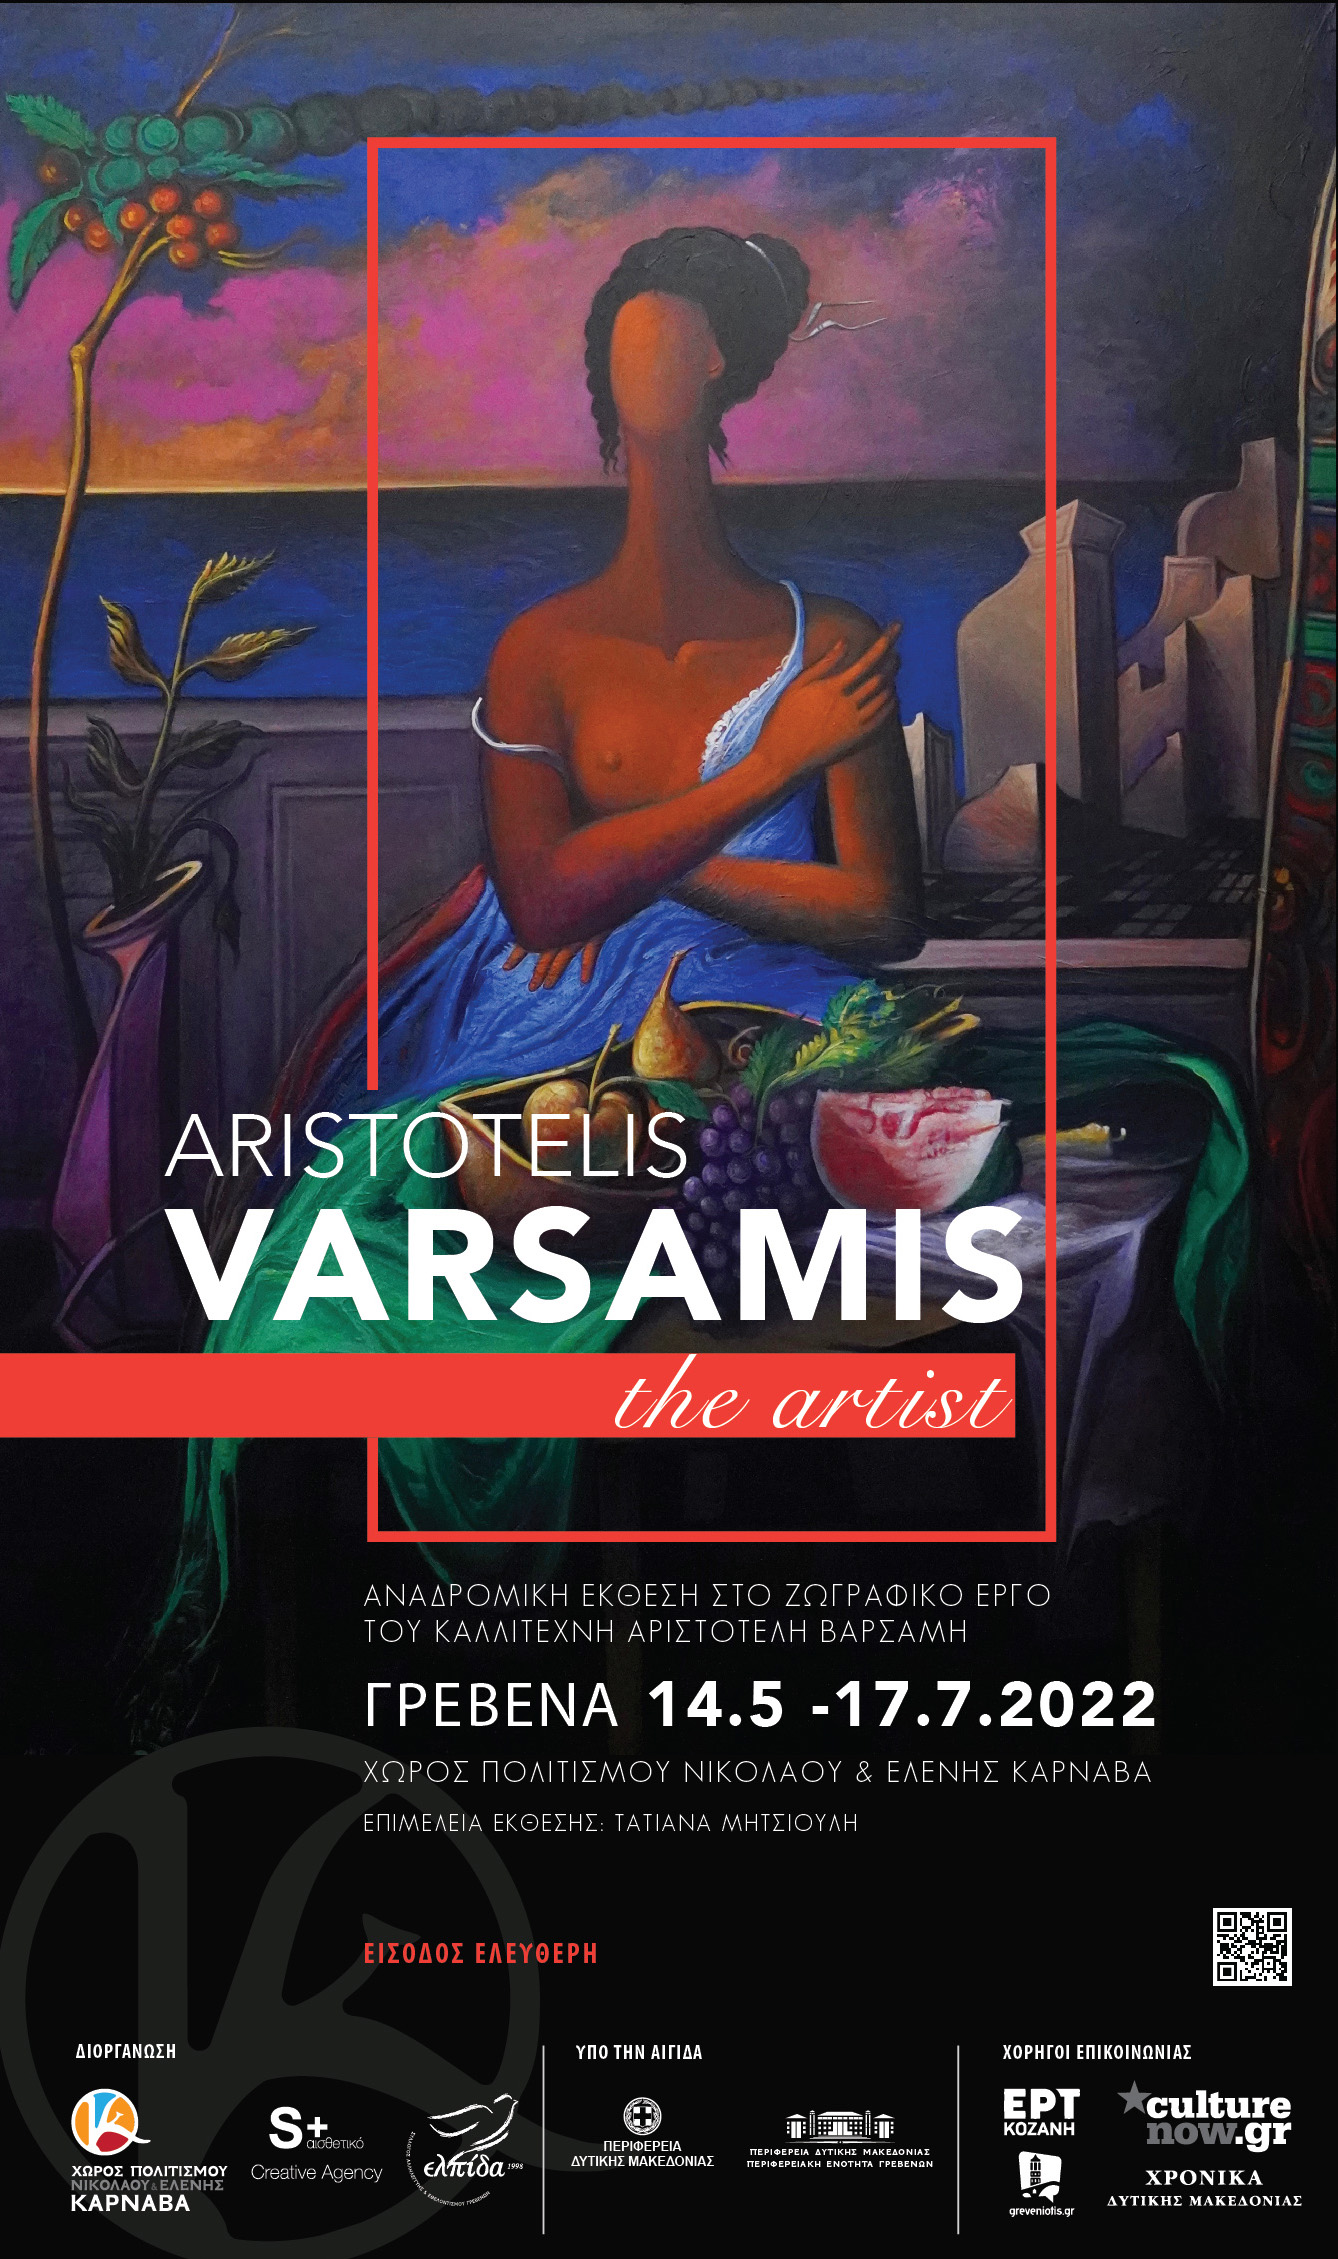 Aristotelis Varsamis Poster